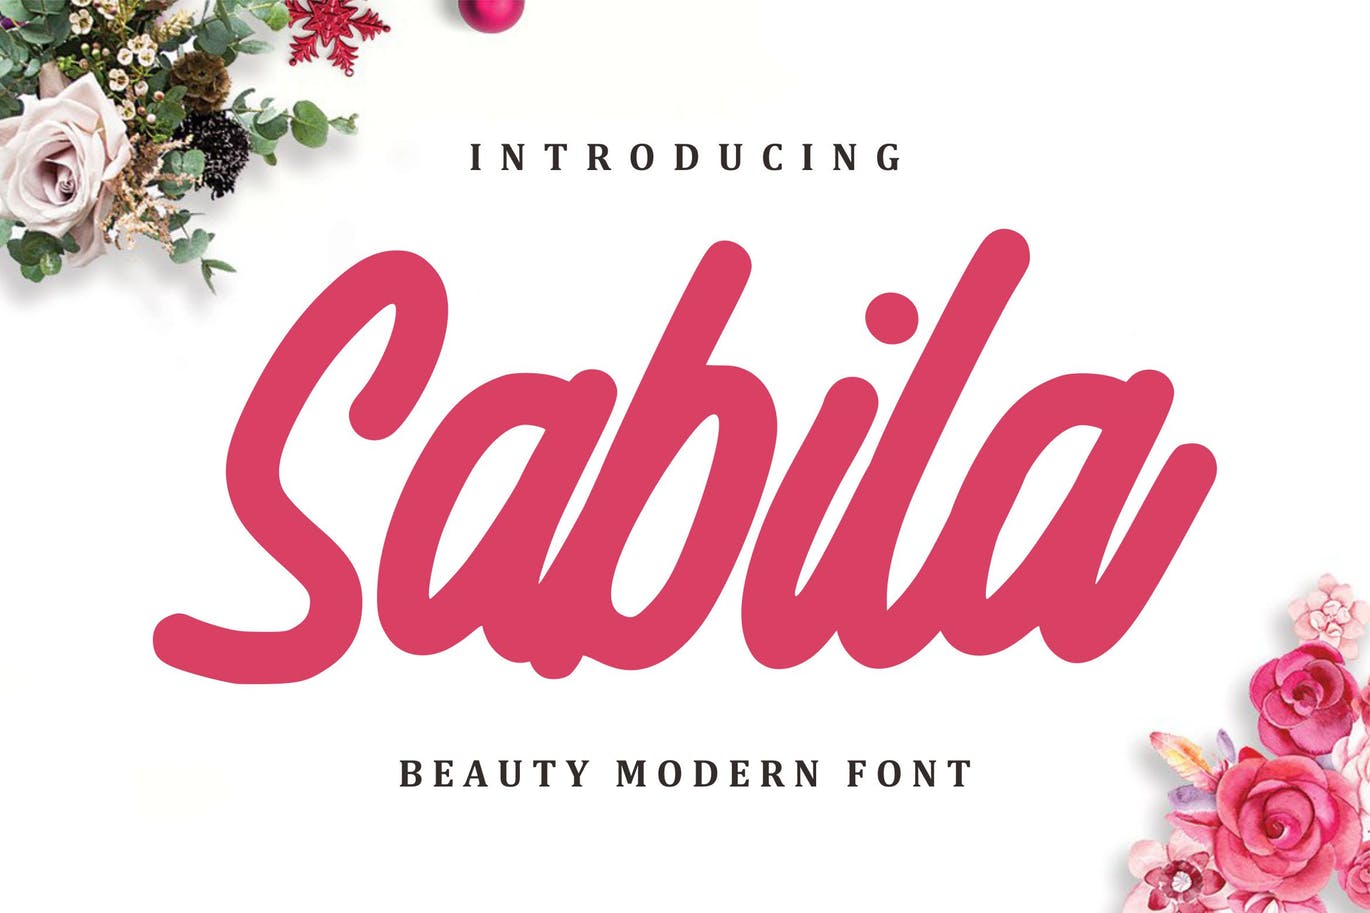 现代设计风格精美英文手写字体下载 Sabila – Beauty Modern Font插图